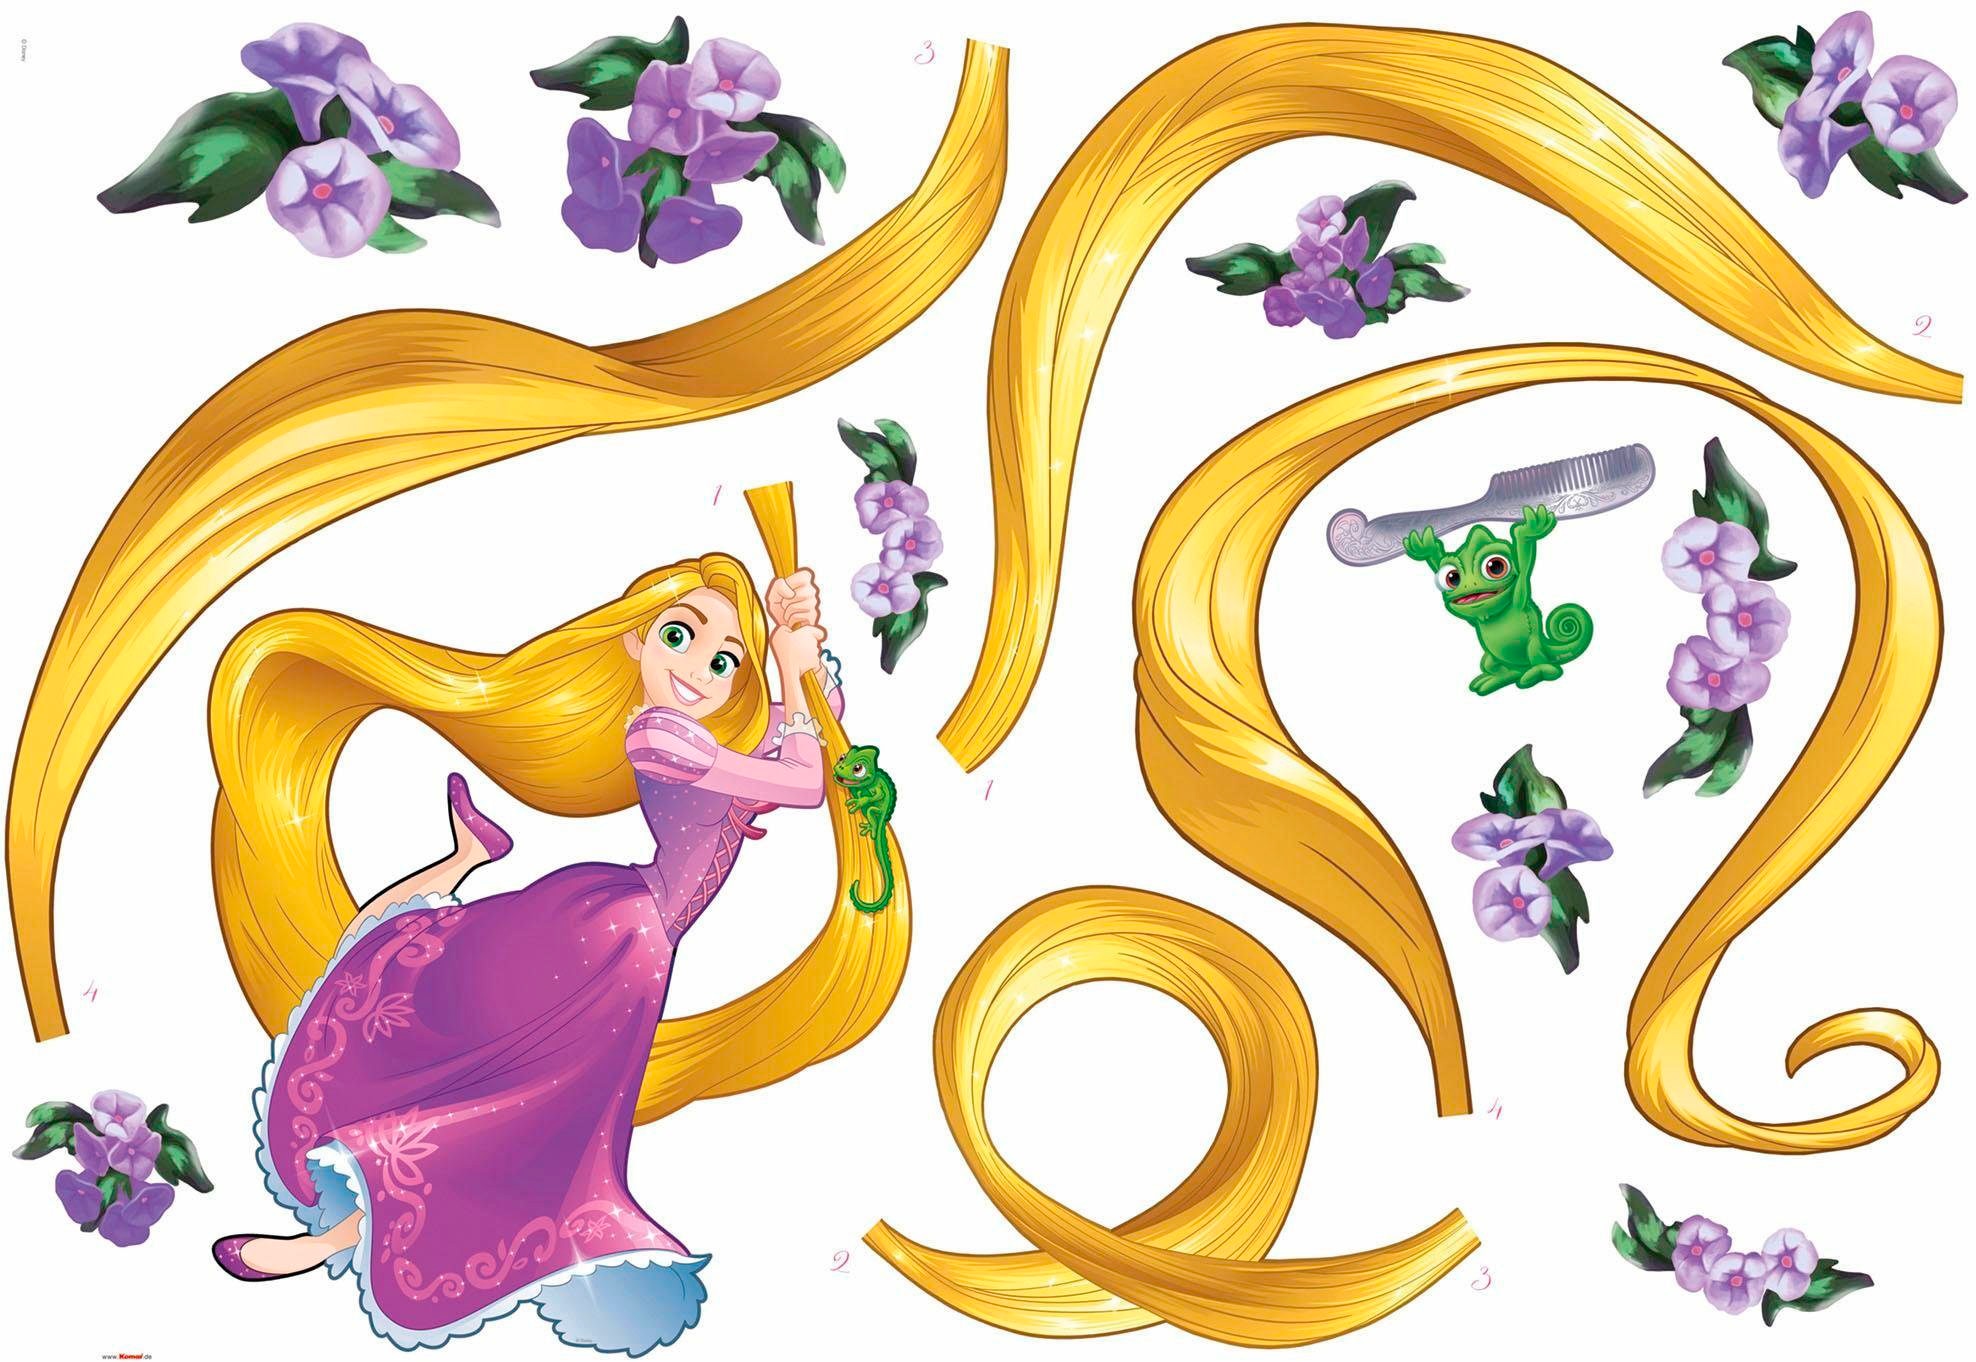 Wandtattoo »Rapunzel«, 100x70 cm (Breite x Höhe), selbstklebendes Wandtattoo